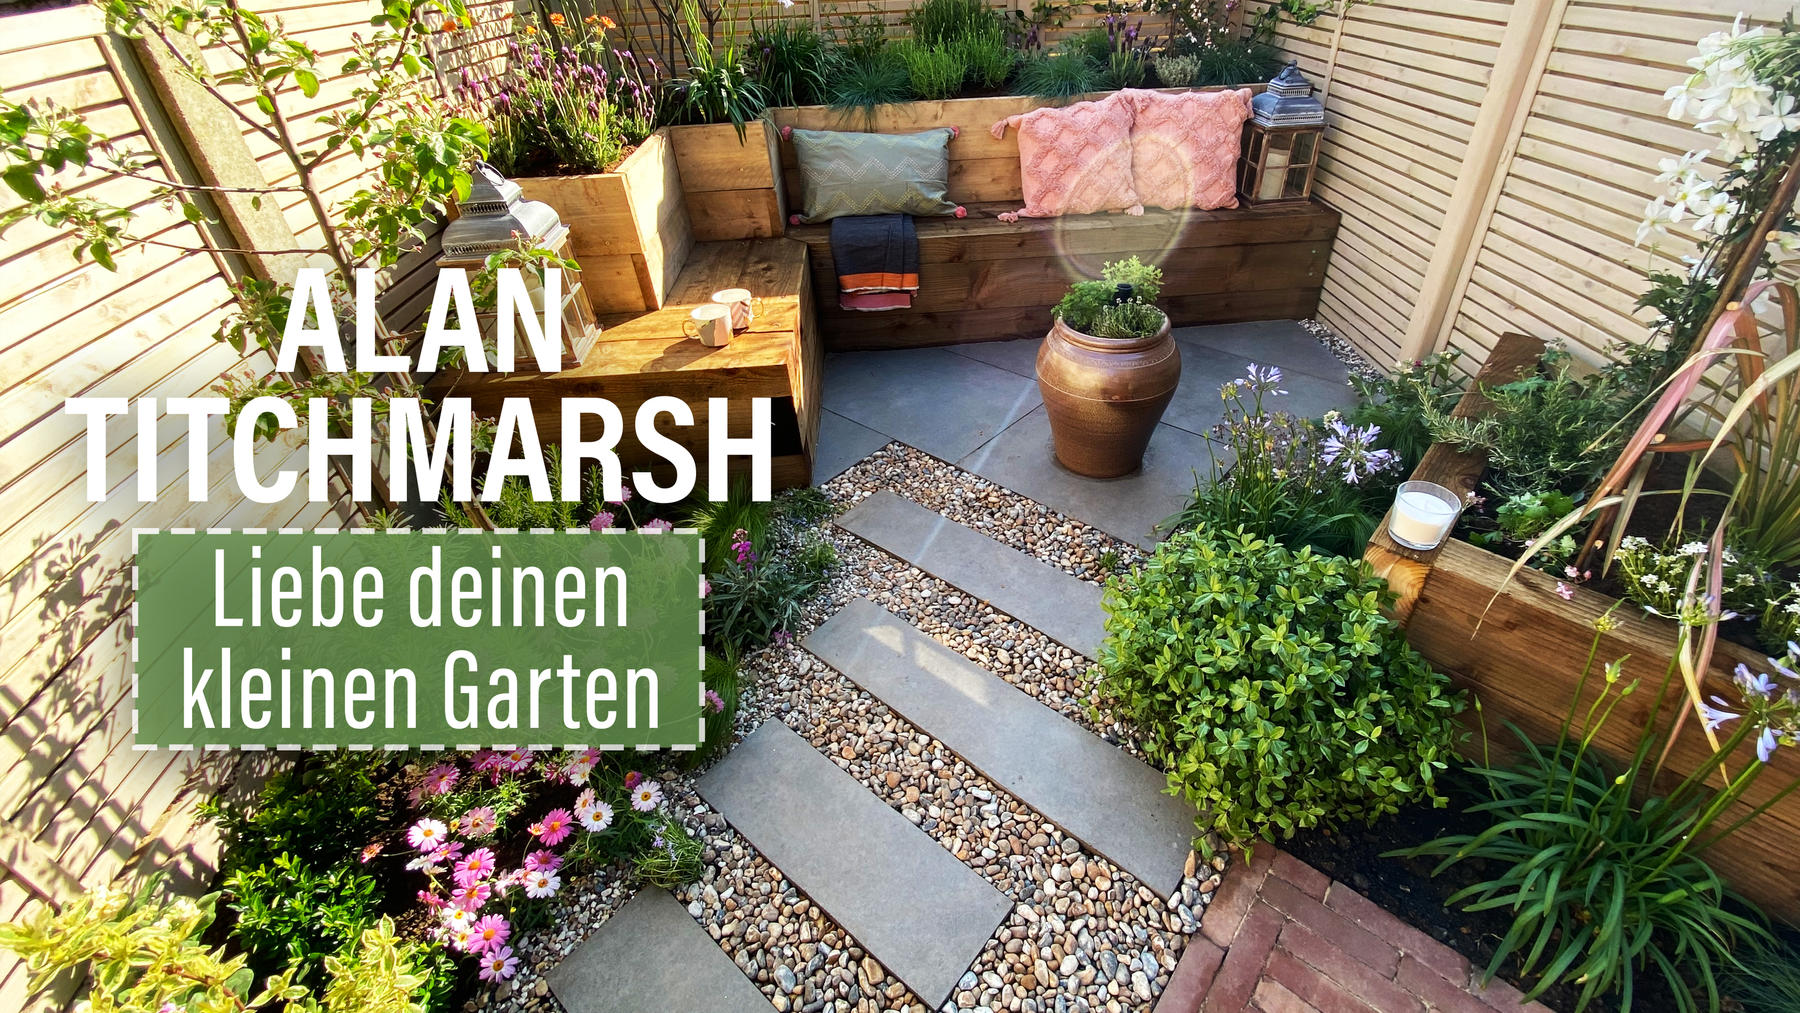 Alan Titchmarsh: Liebe deinen kleinen Garten